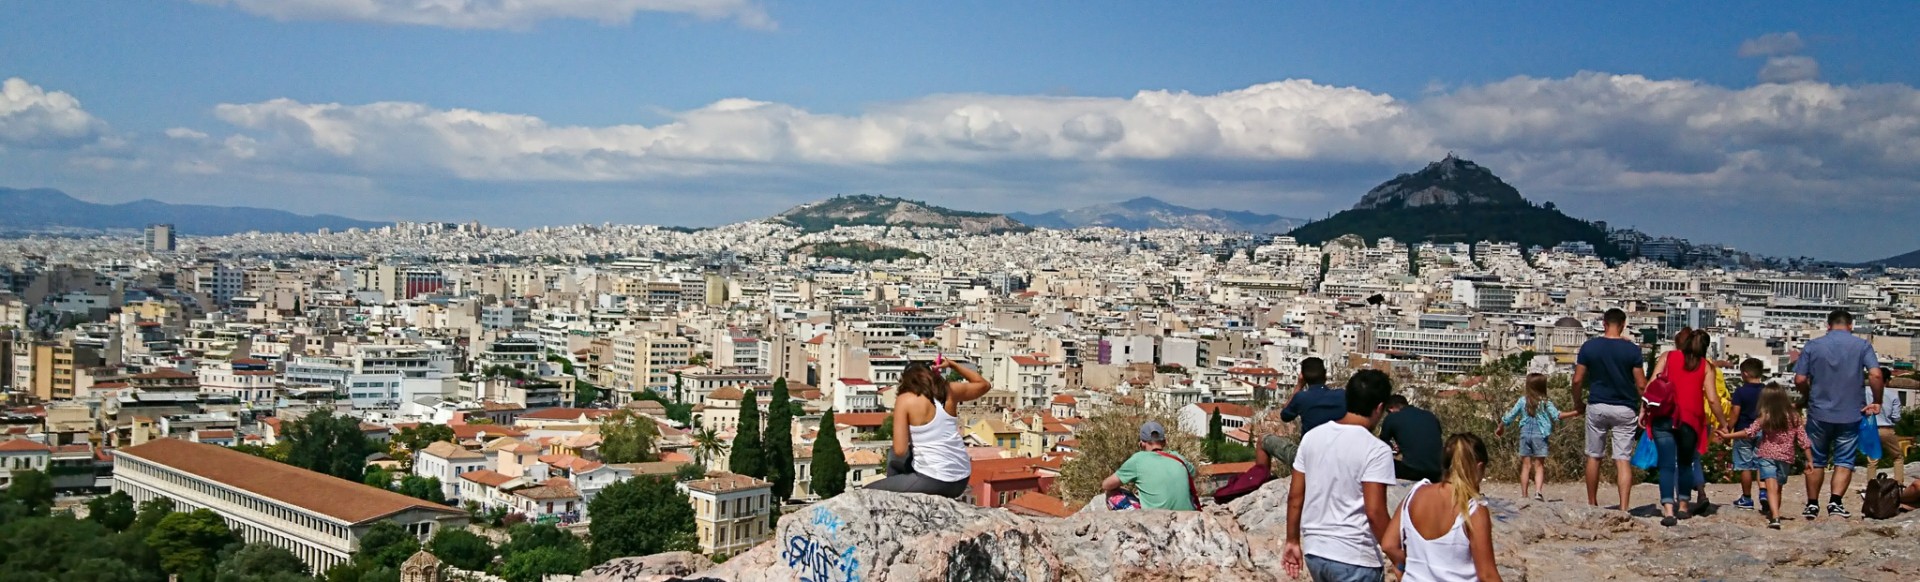 Utsikt från Areopagus Hills över Aten och Lycabettus Hill 